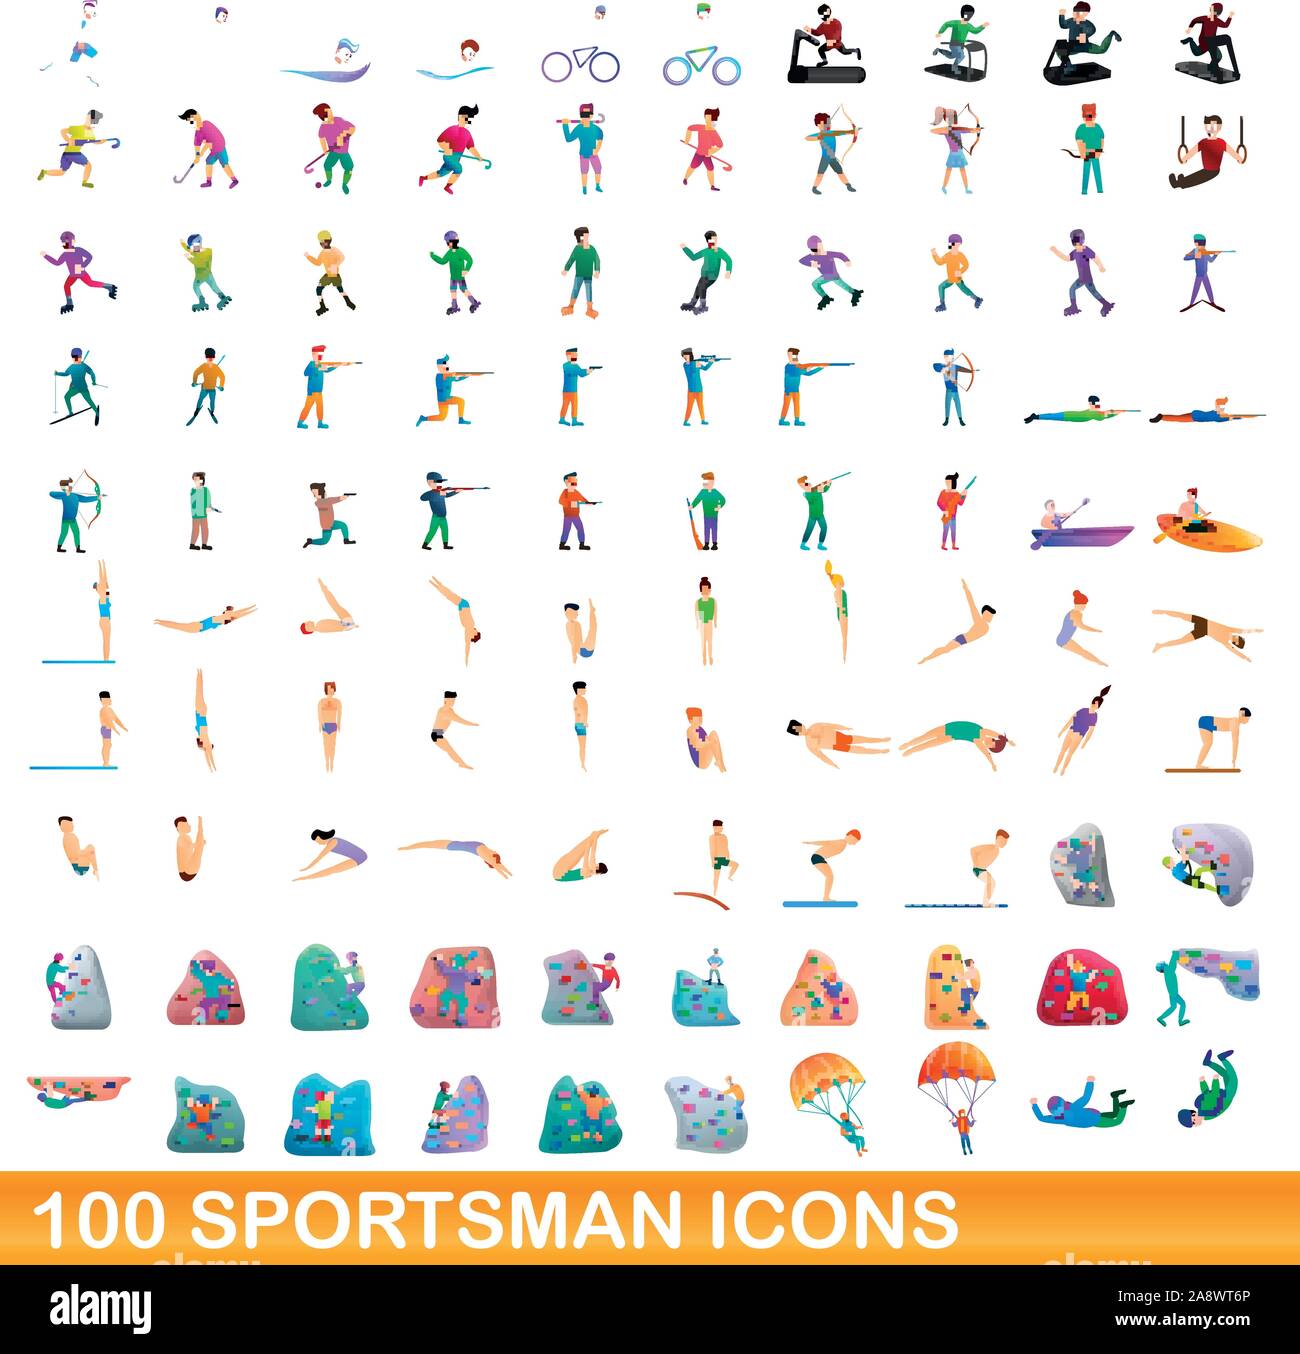 100 sportsman icons set. Cartoon illustration de sportsman 100 icônes vector set isolé sur fond blanc Illustration de Vecteur